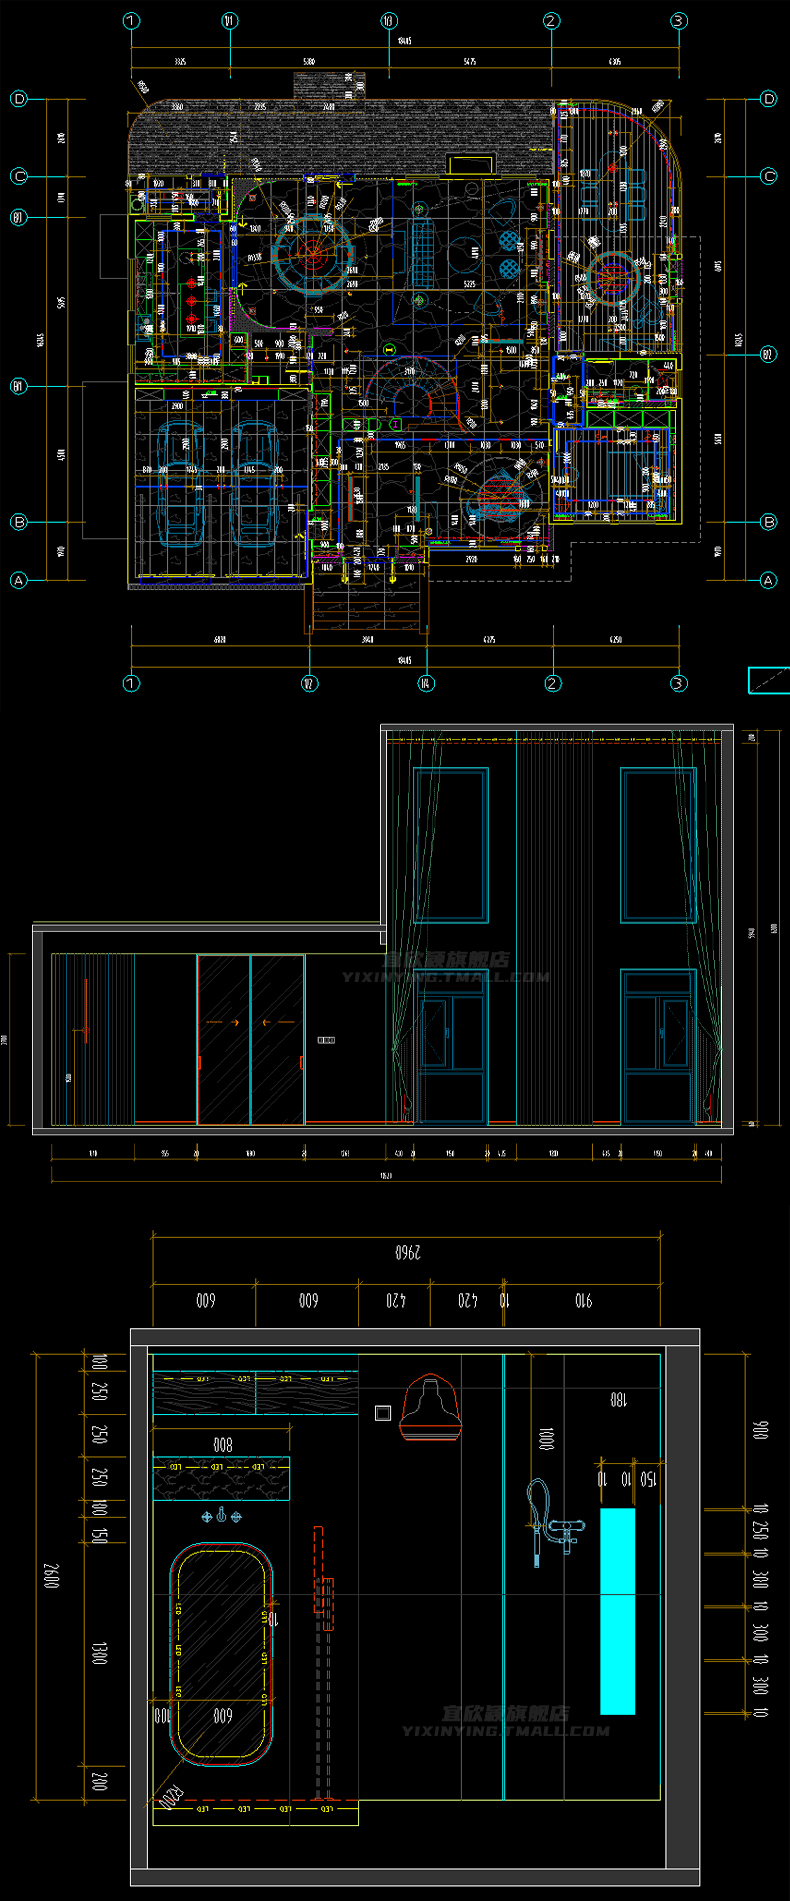 257套欧式别墅全套室内家装装修设计方案效果图平面立面CAD施工图图纸